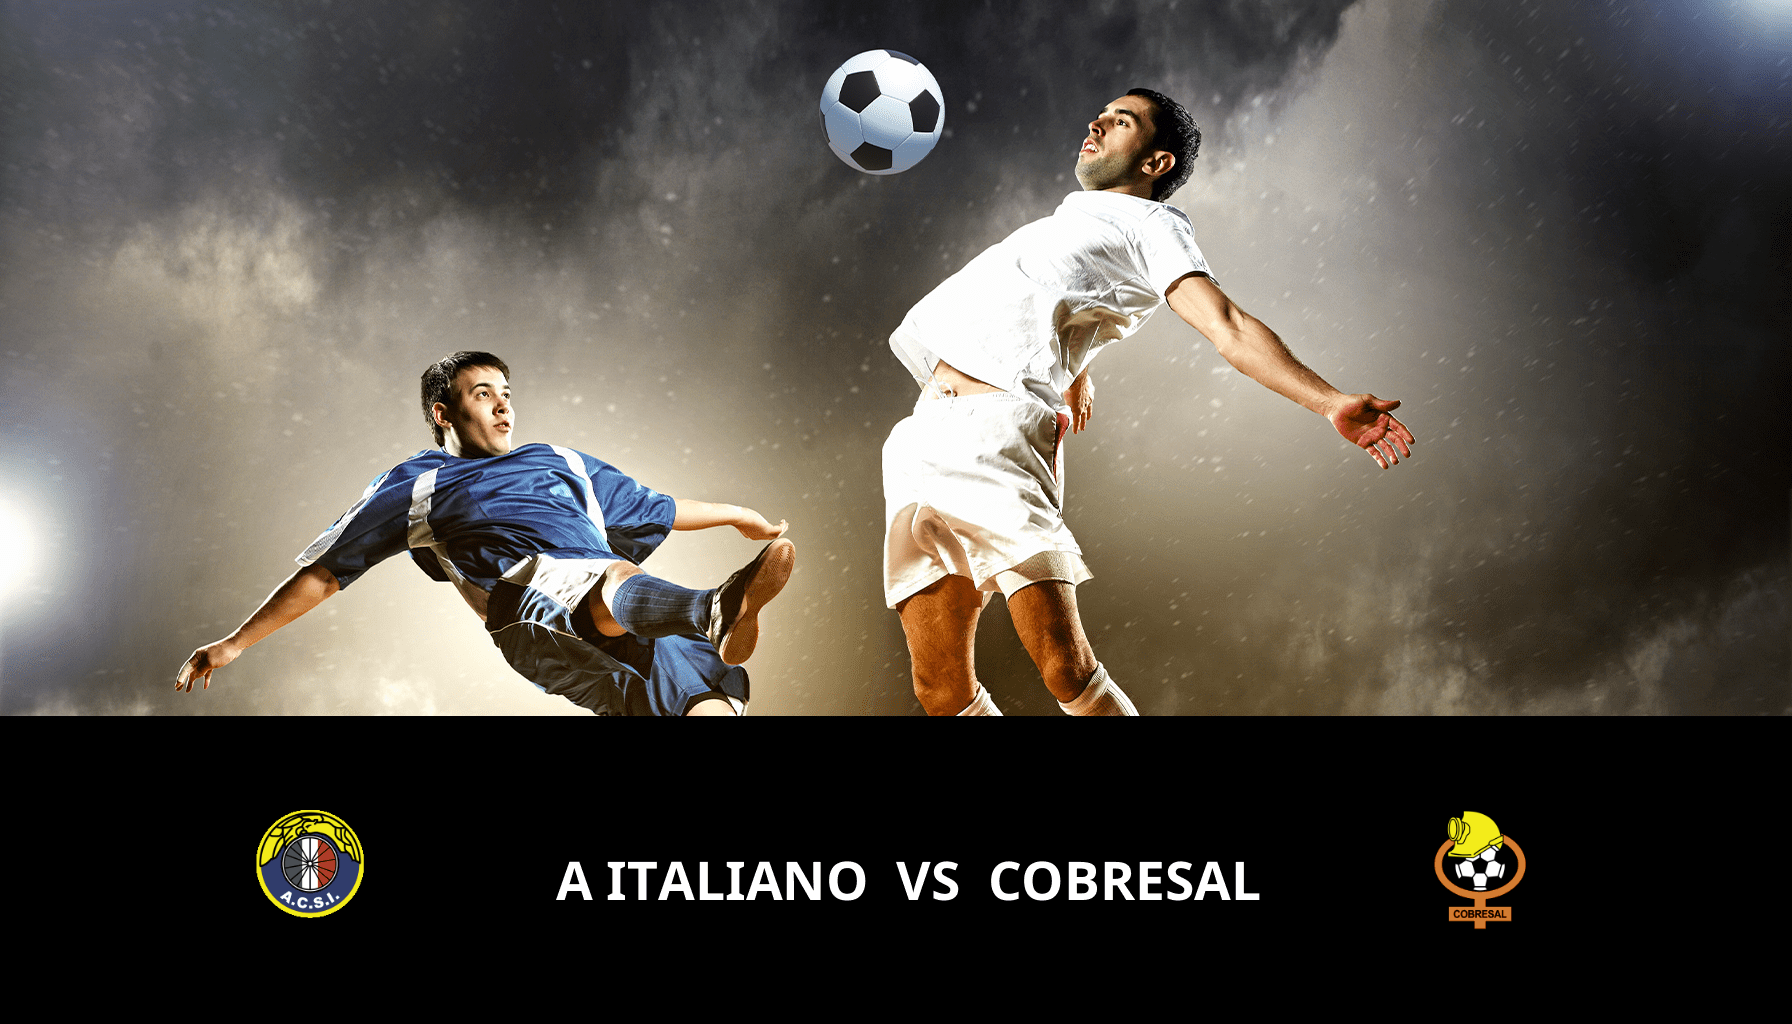 Previsione per A Italiano VS Cobresal il 30/04/2024 Analysis of the match